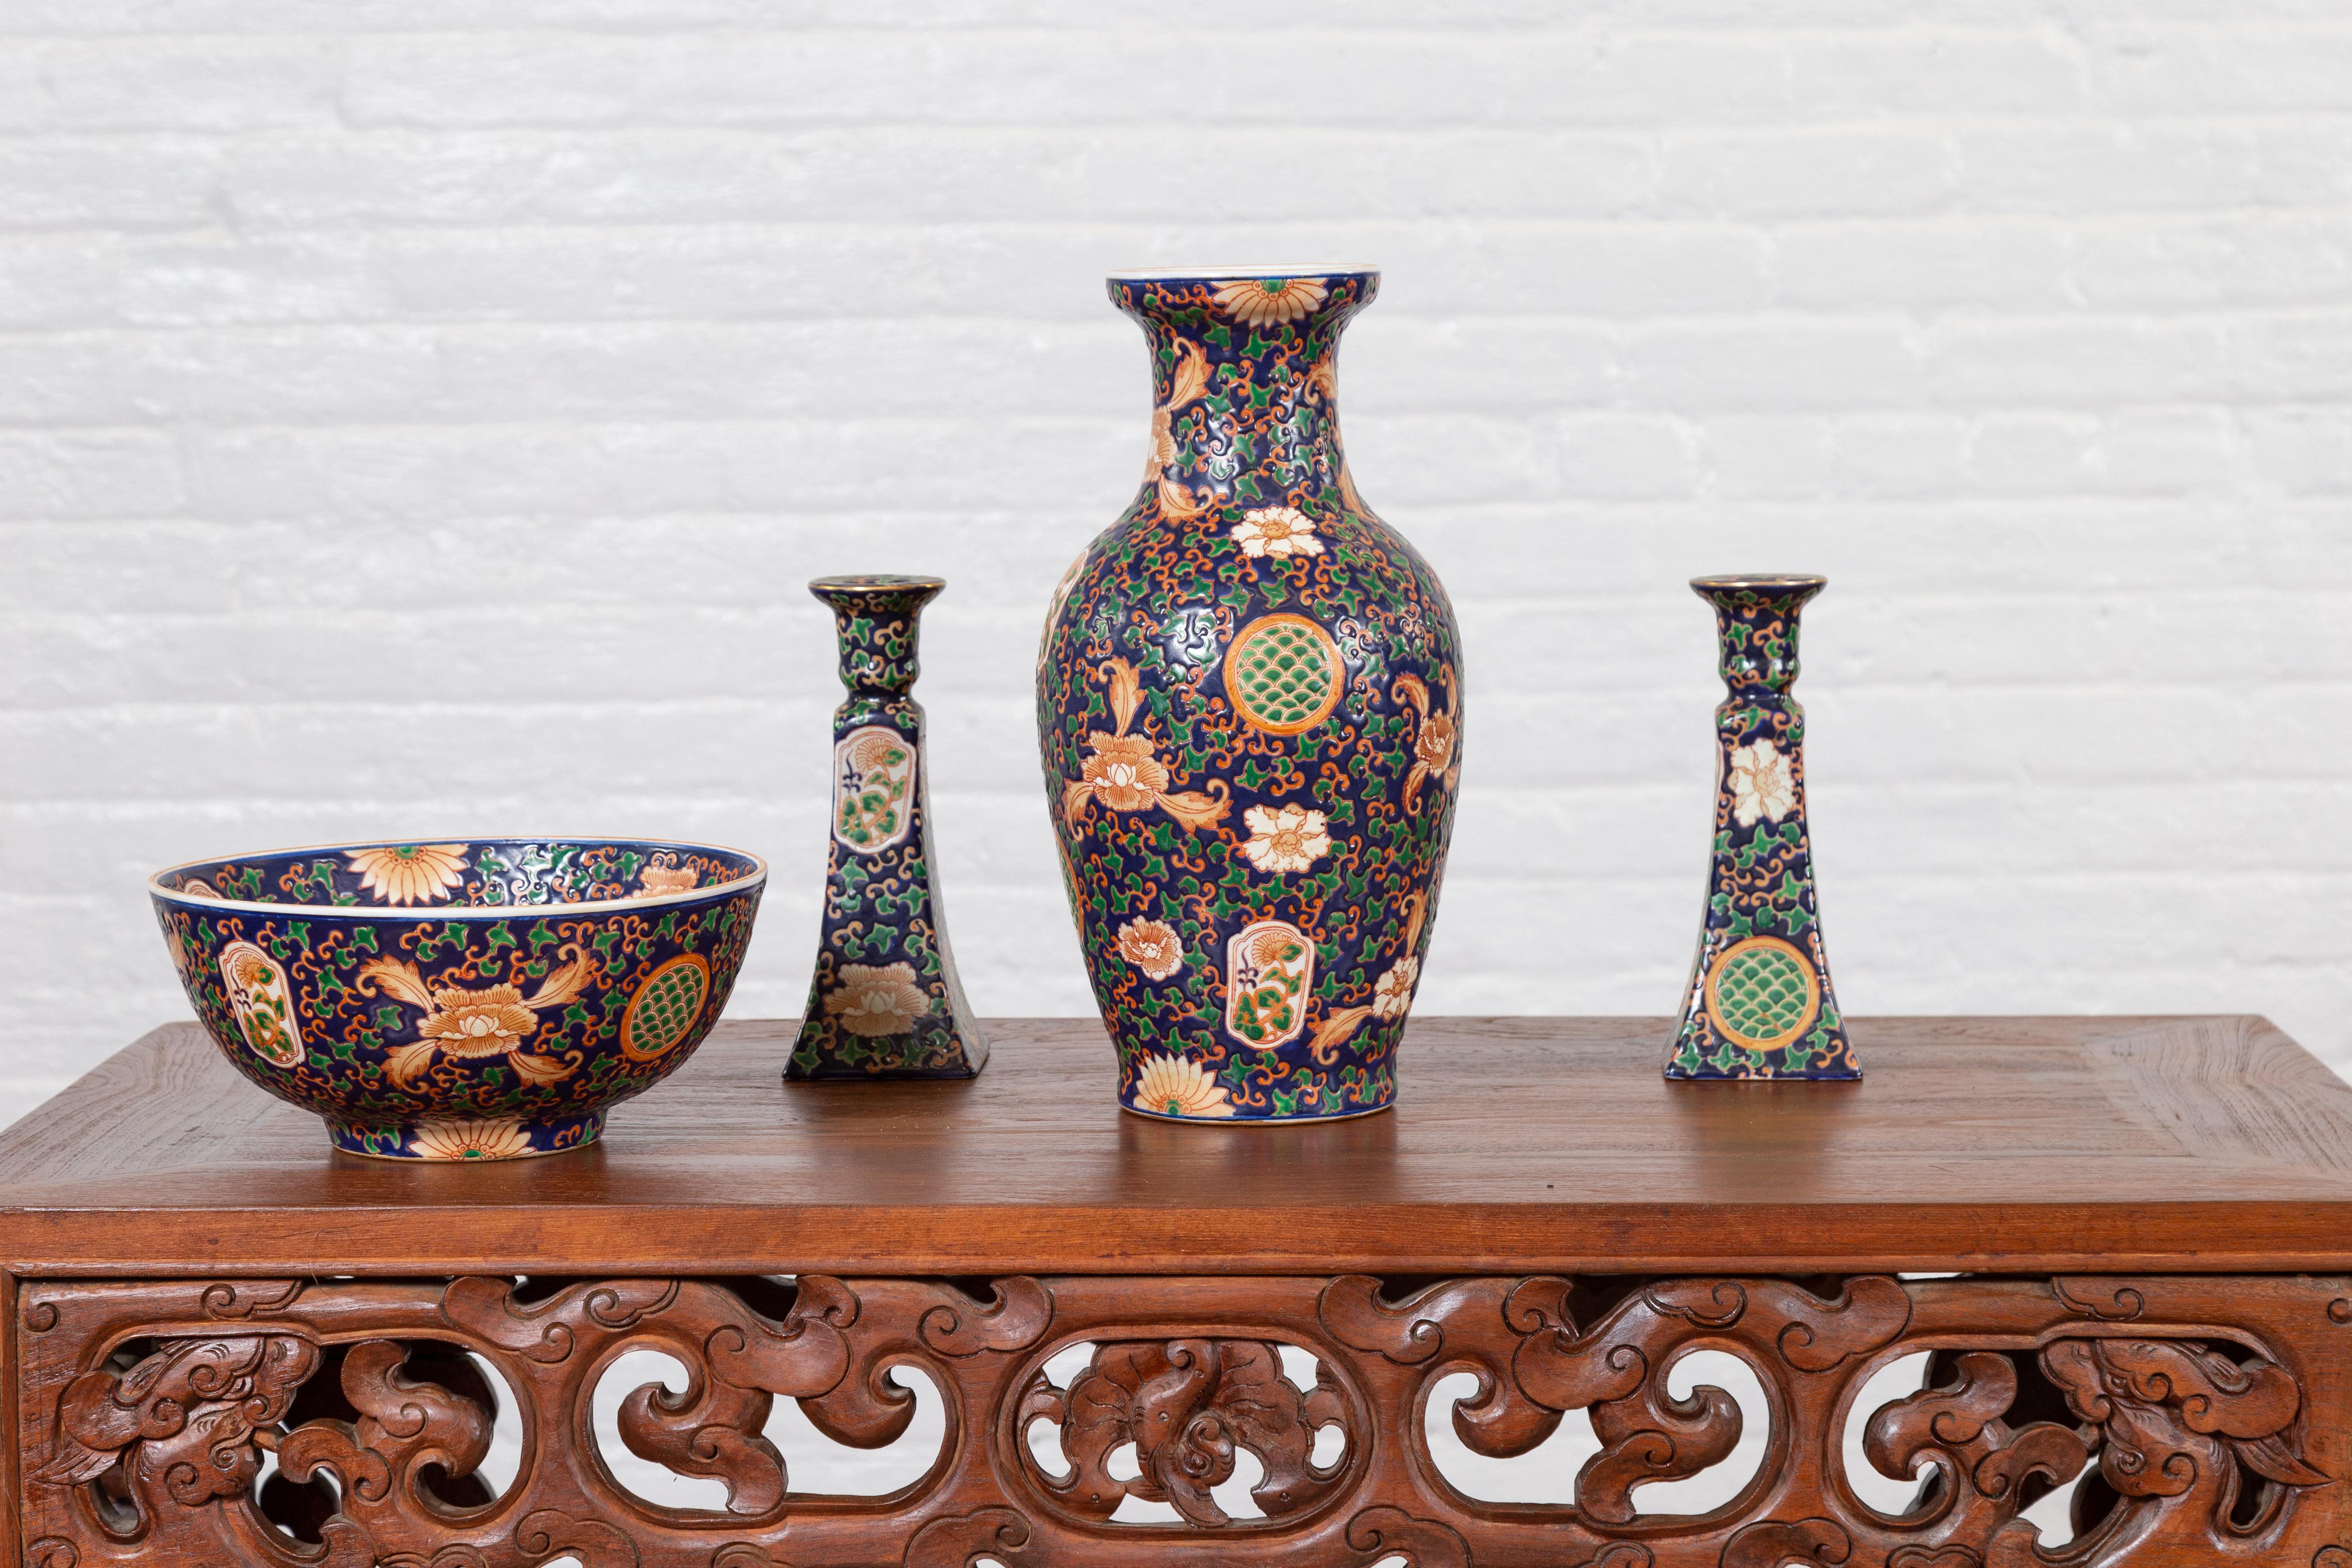 colorful decorative bowls